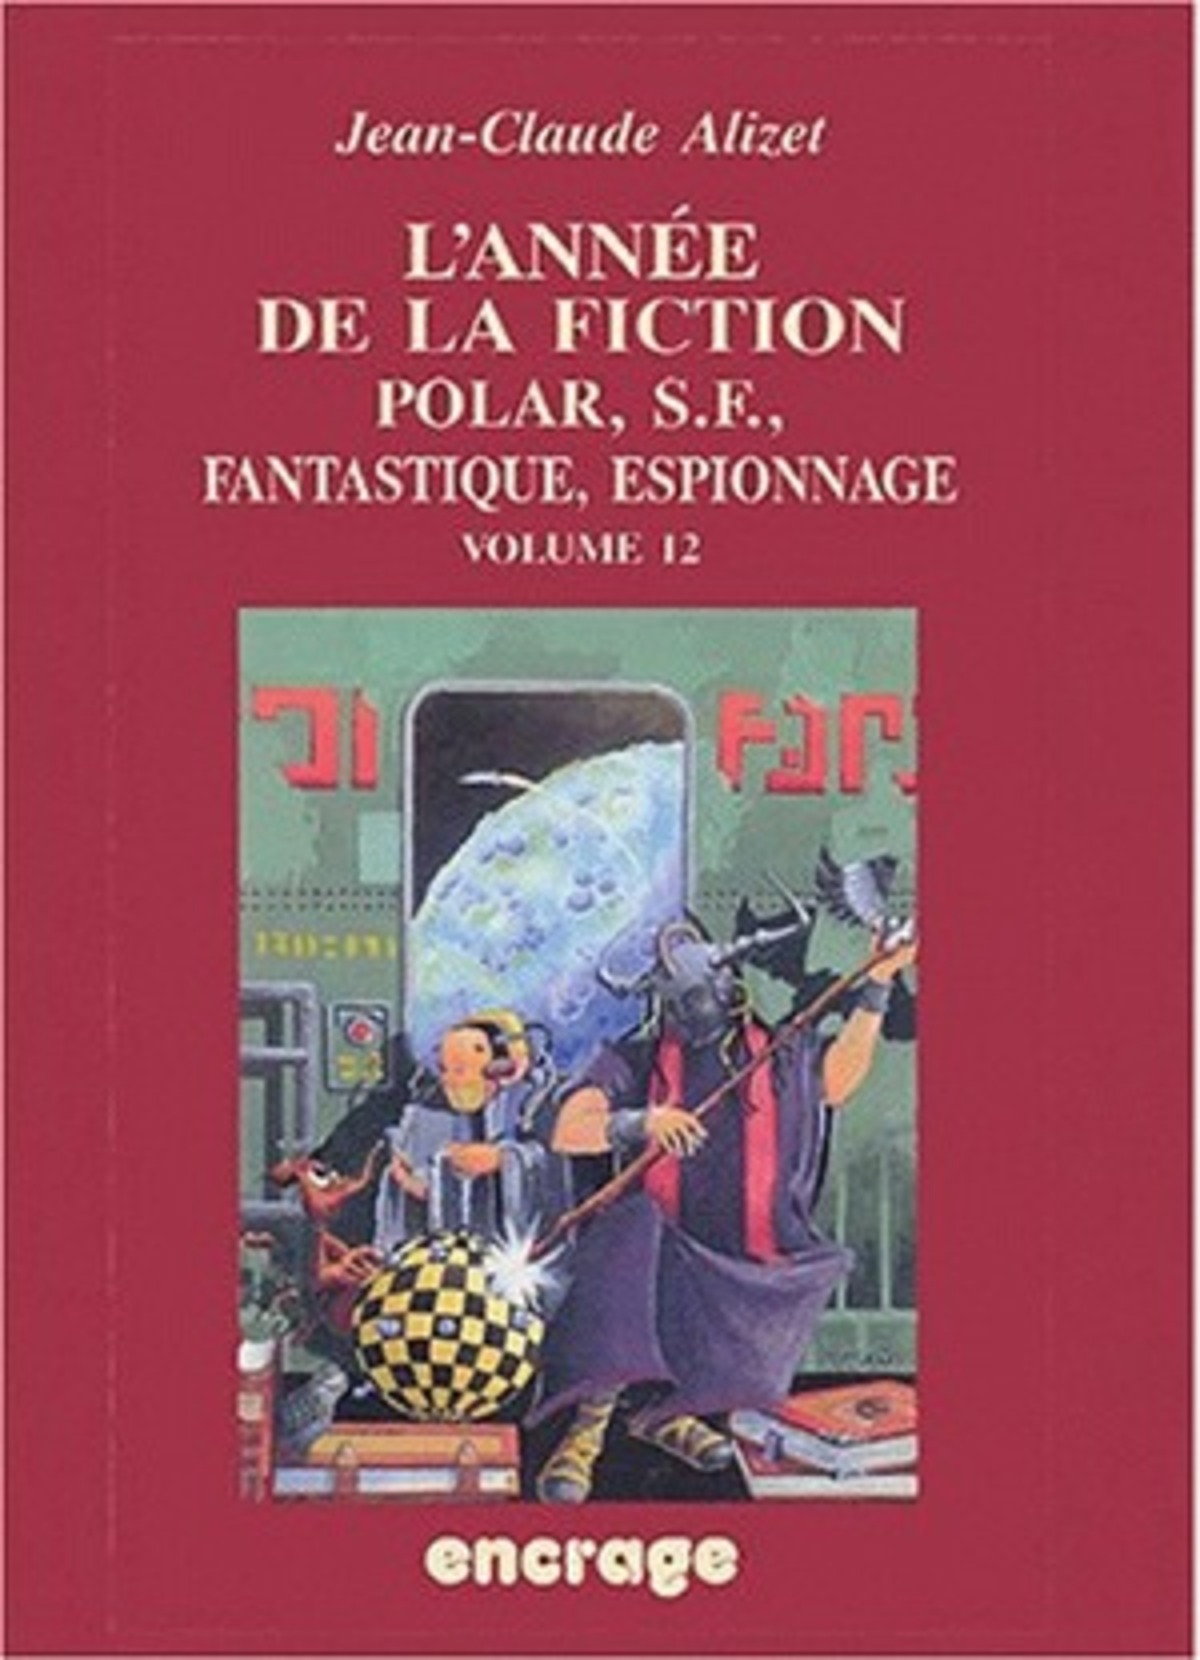 L'Année de la fiction / volume 12